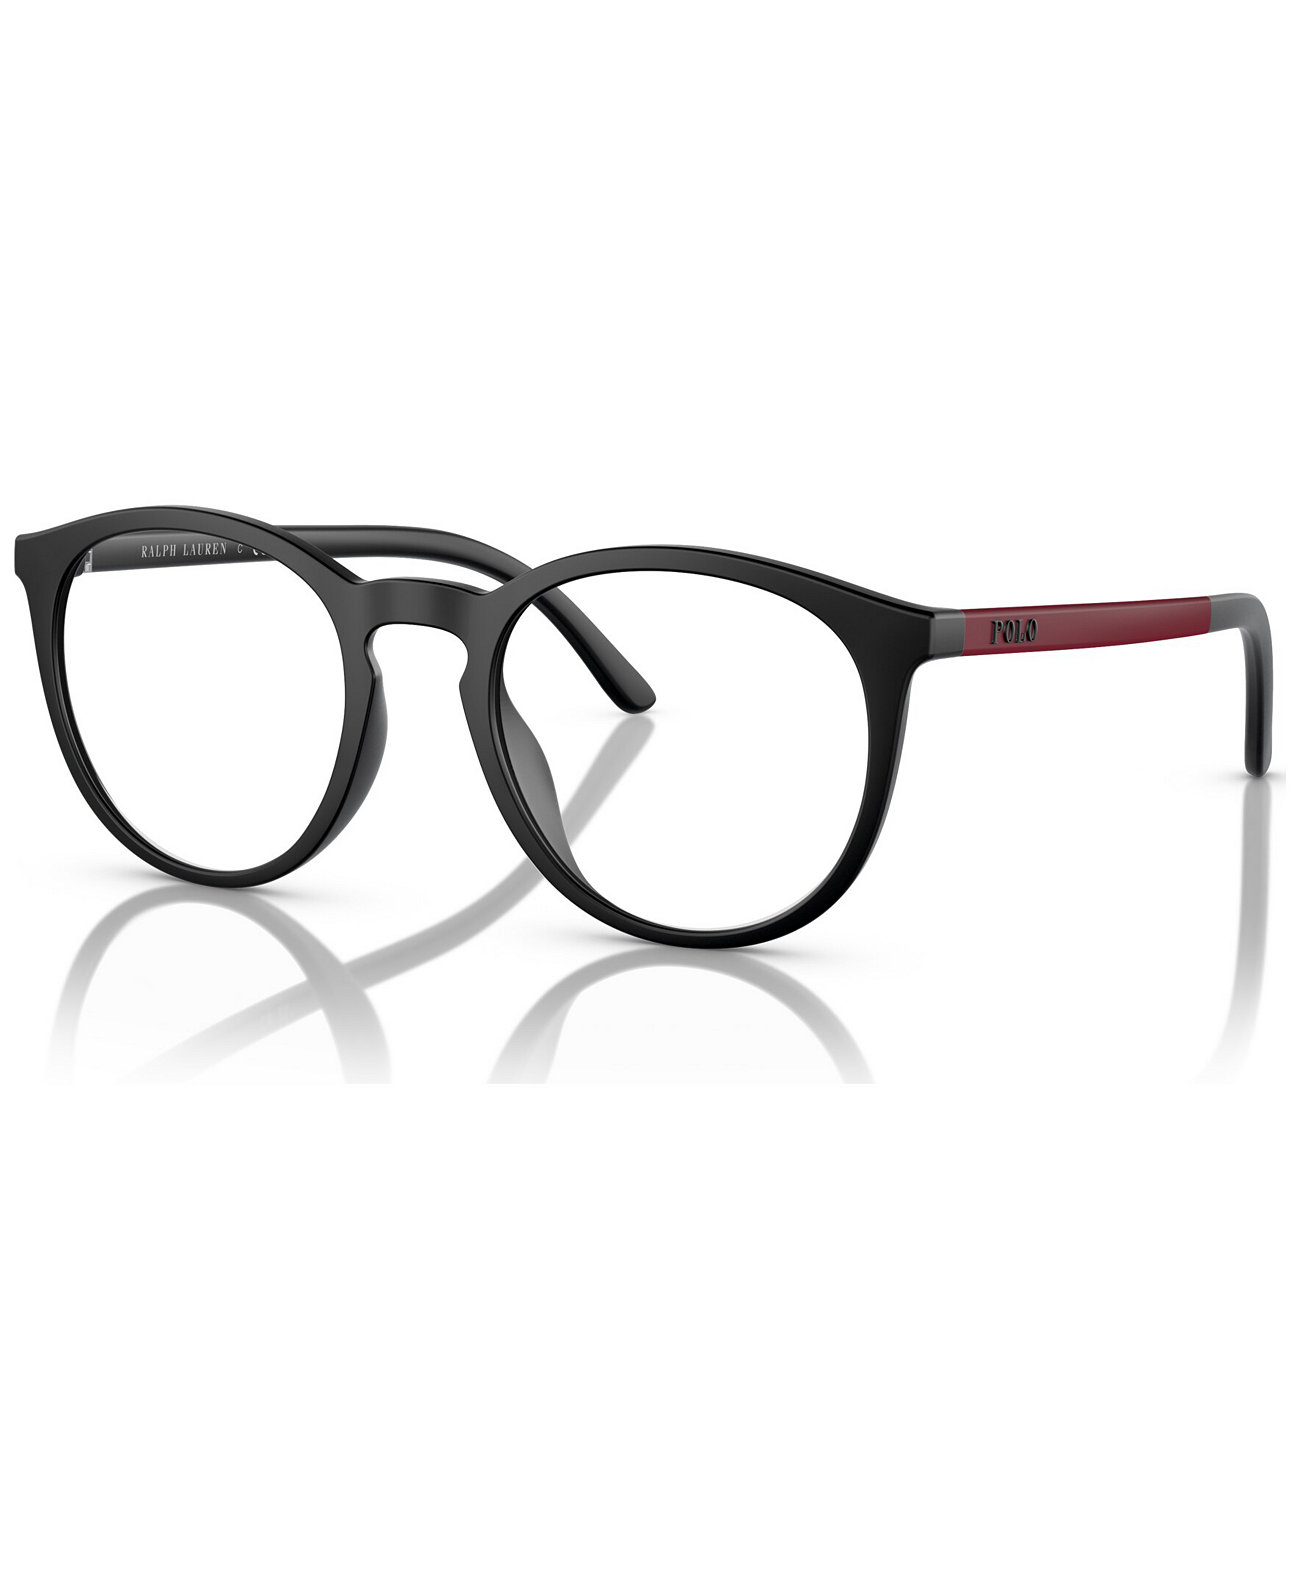 Мужские солнцезащитные очки с клипсой, PH4183U Polo Ralph Lauren